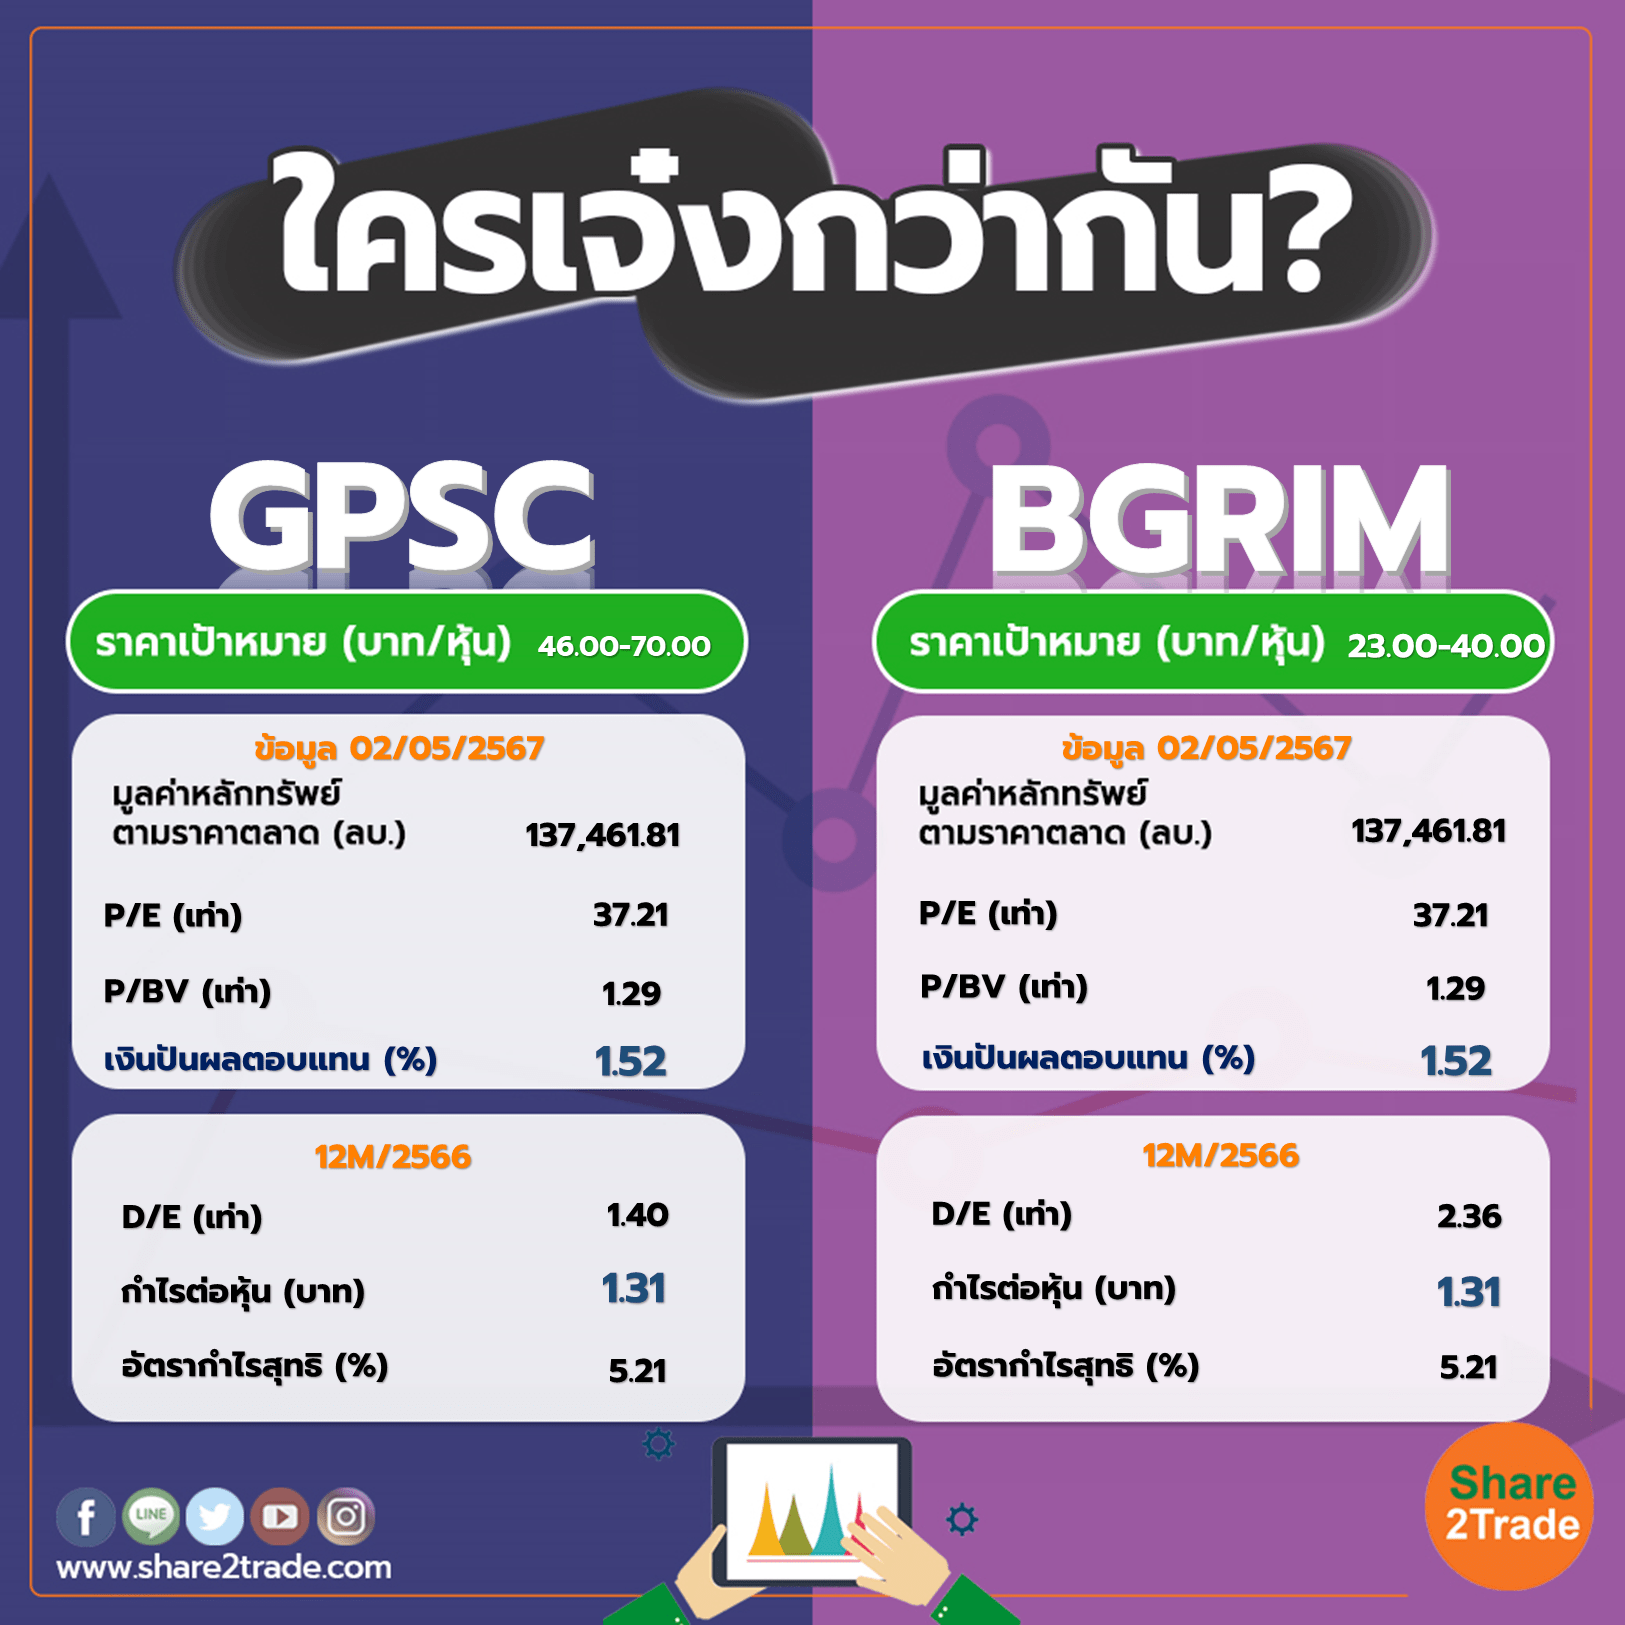 ใครเจ๋งกว่ากัน "GPSC" VS "BGRIM"